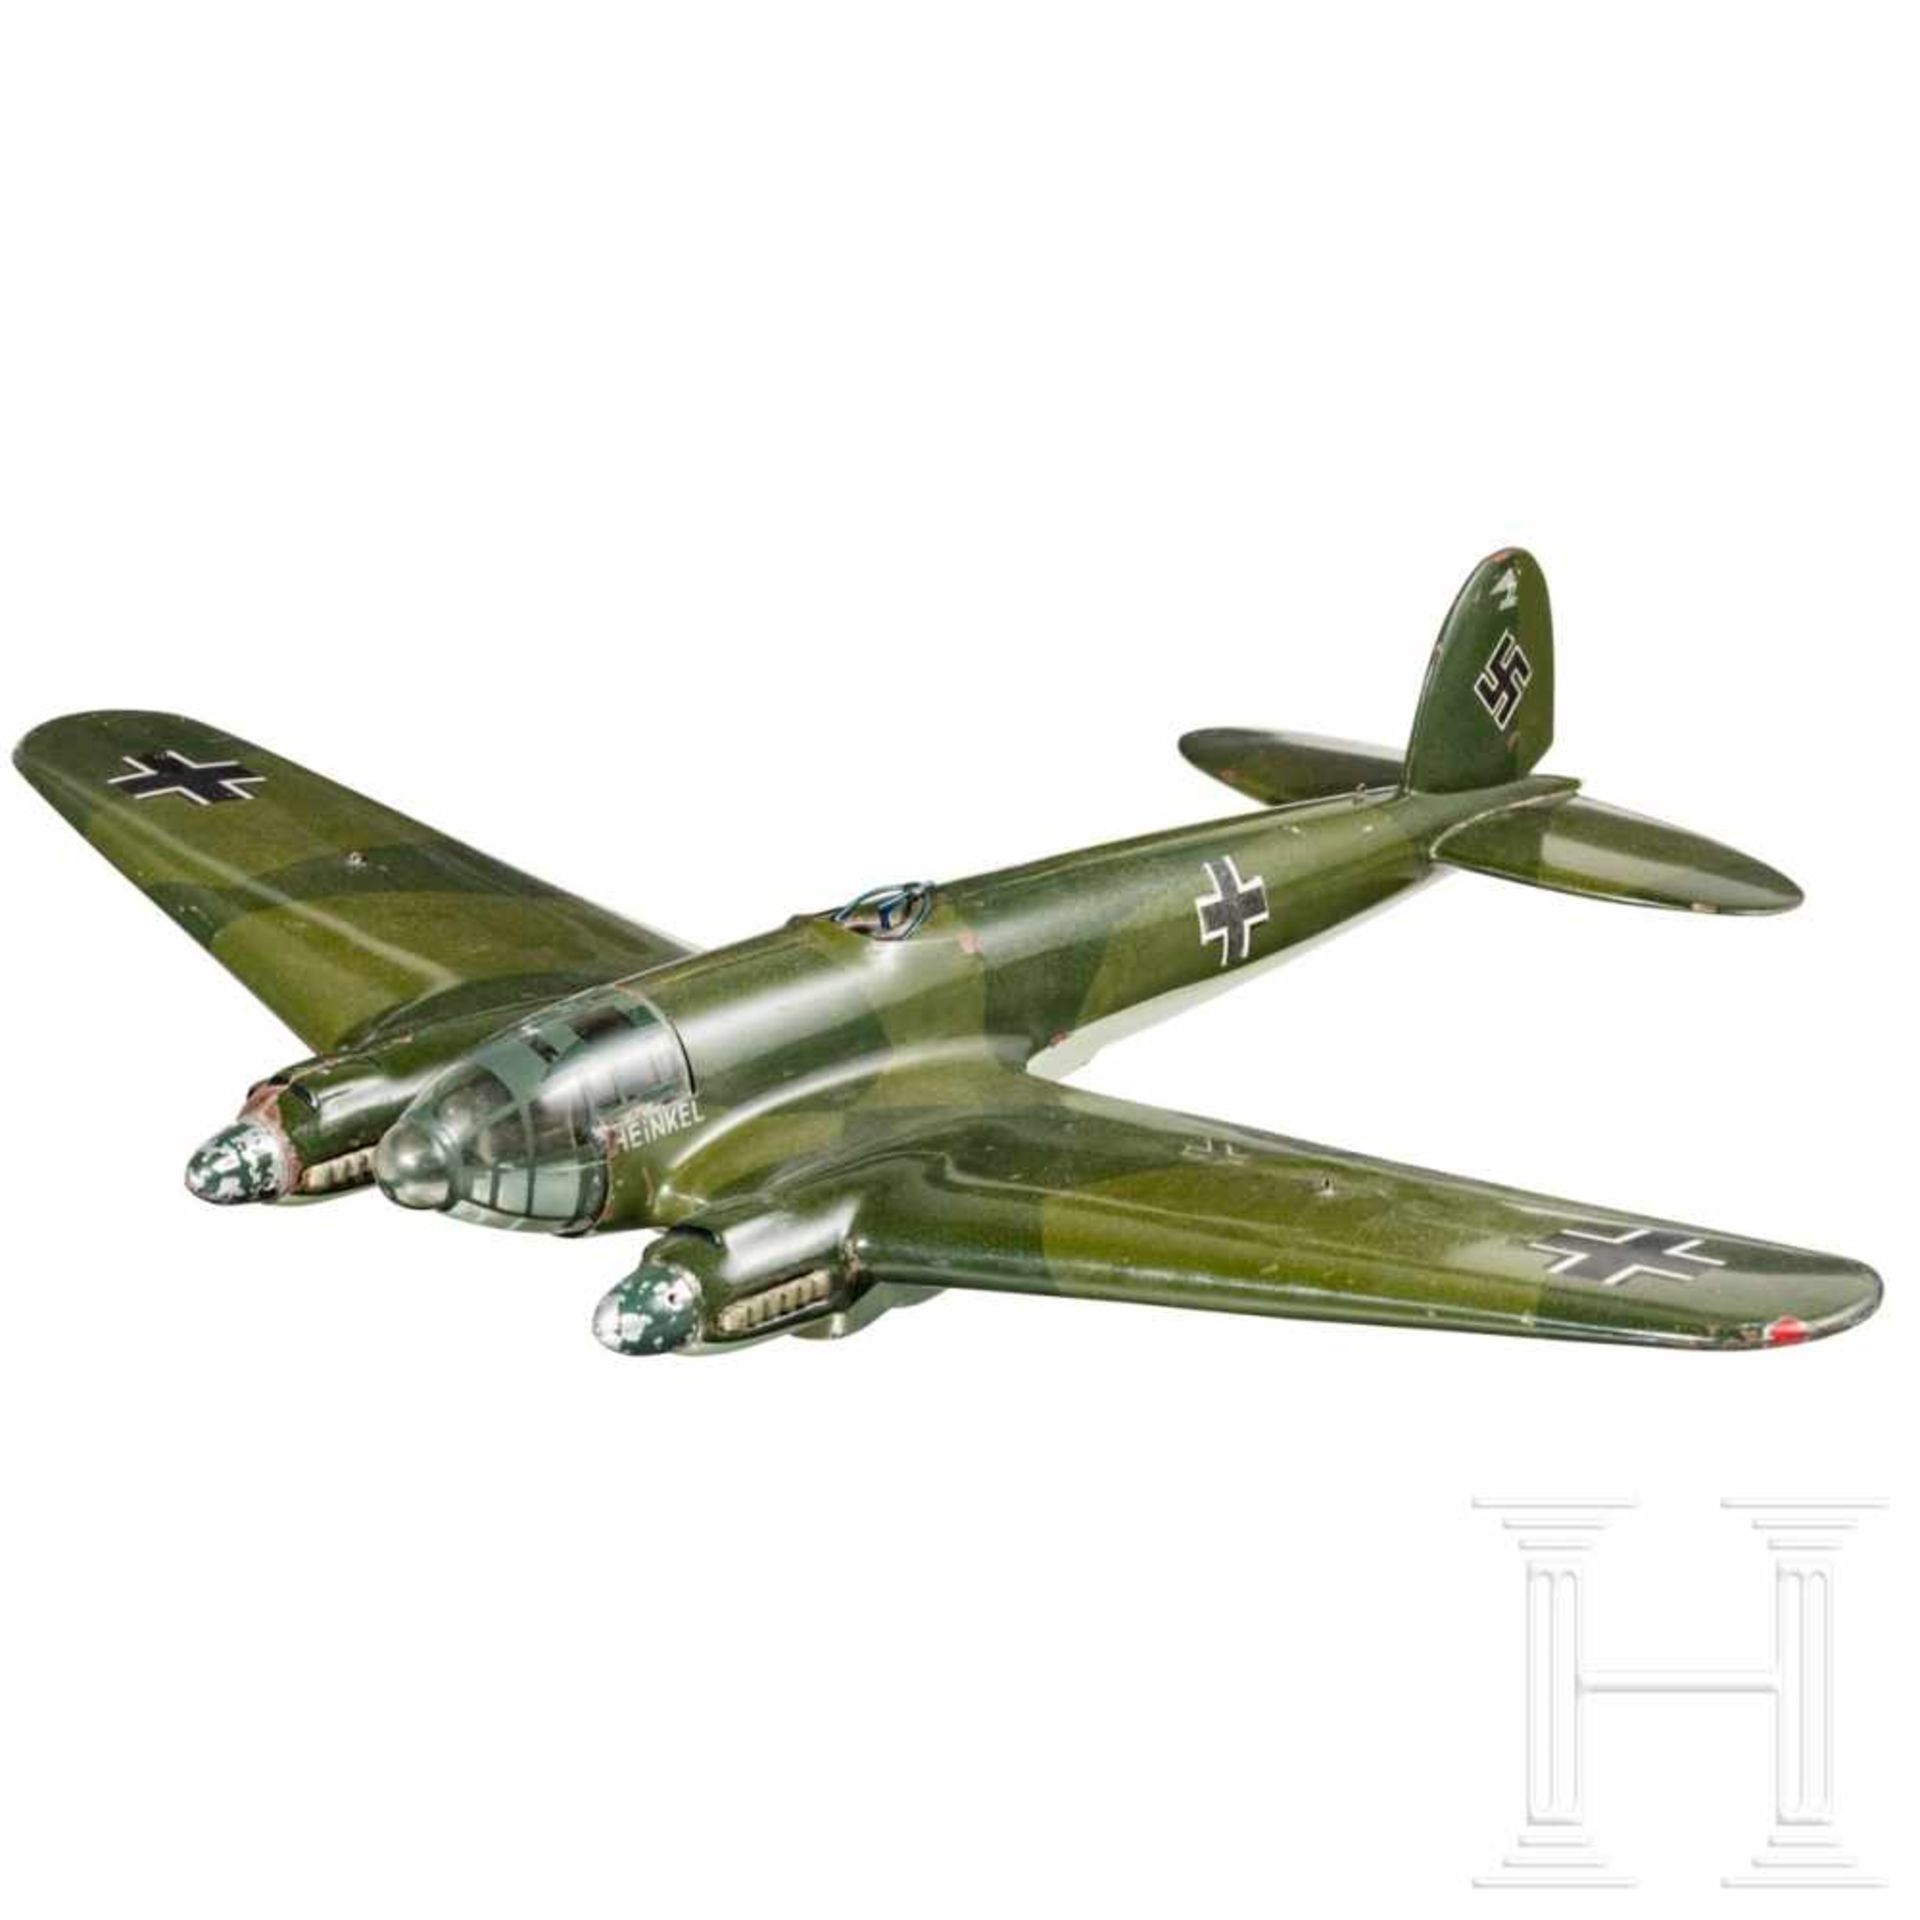 Werksmodell eines Heinkel He 111 Bombenflugzeuges